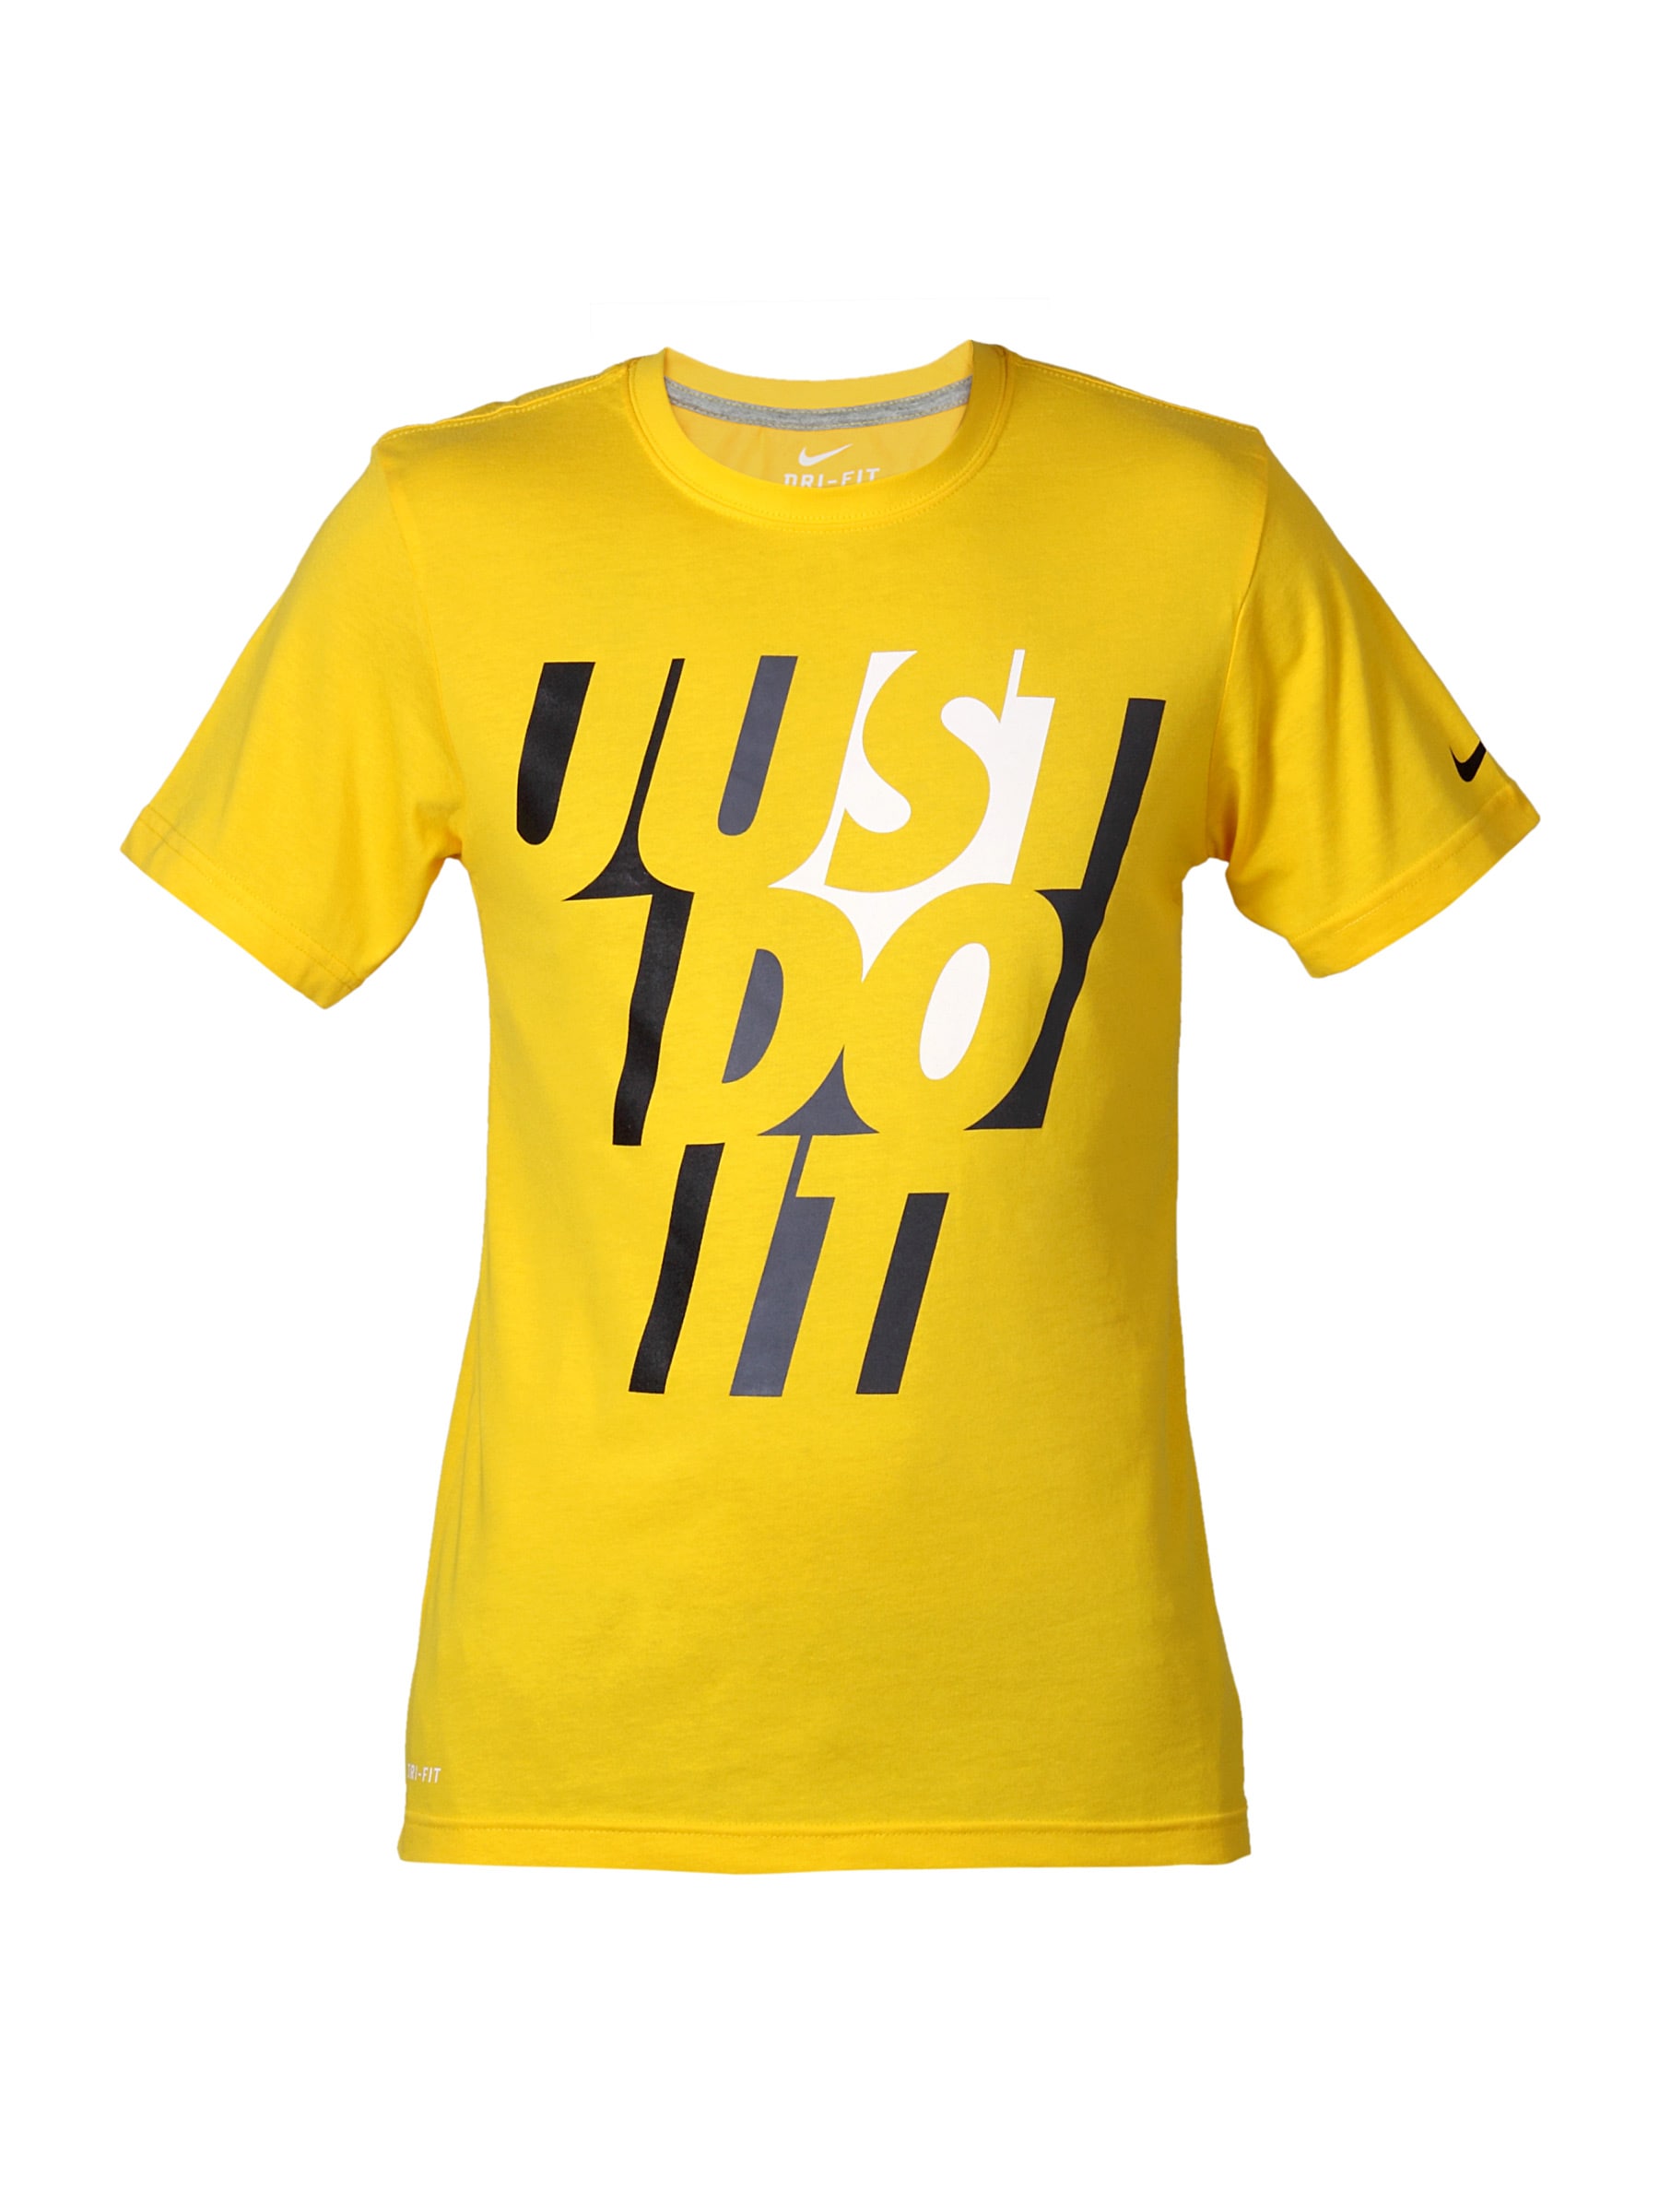 Nike Men Yellow Just Do It T-shirt